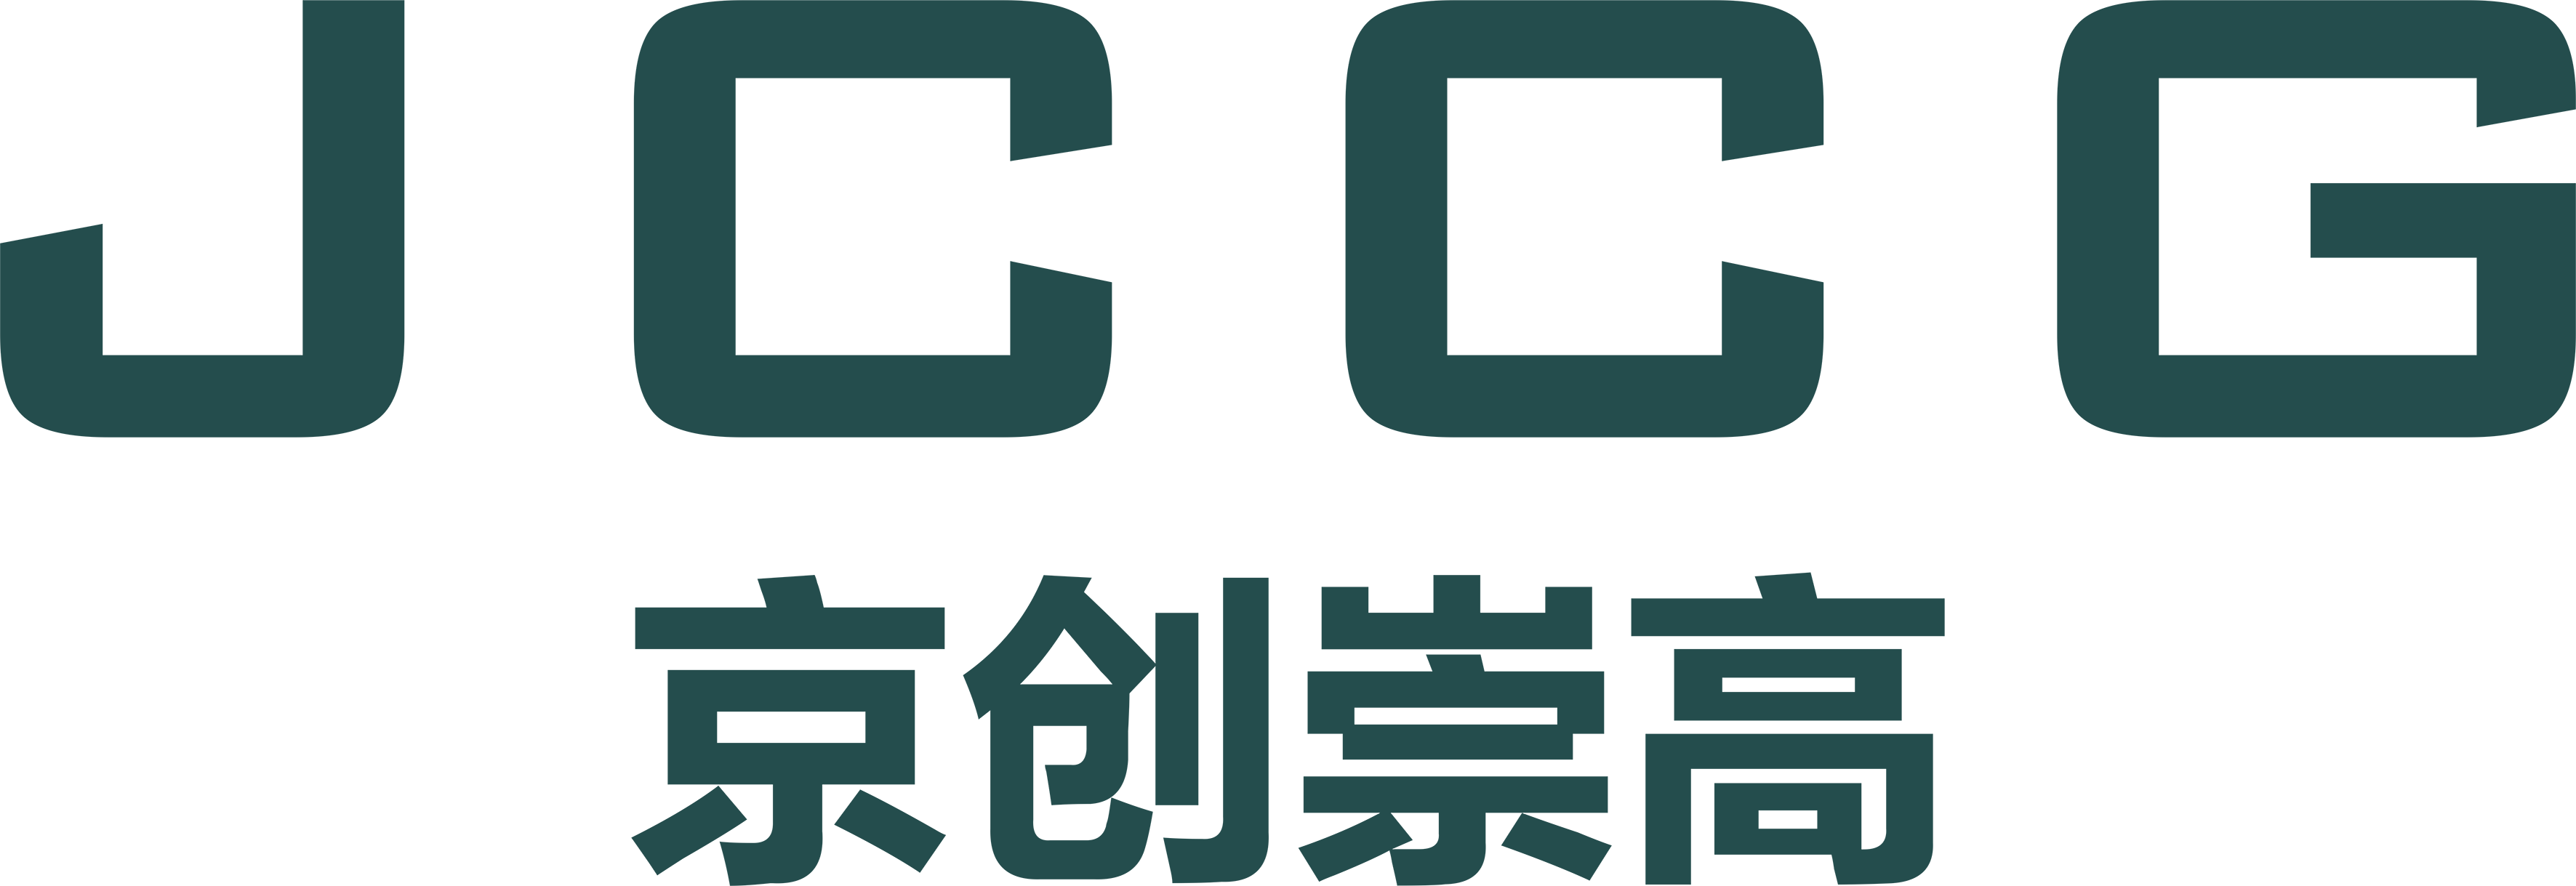 武汉五星体育在线观看有限公司品牌Logo